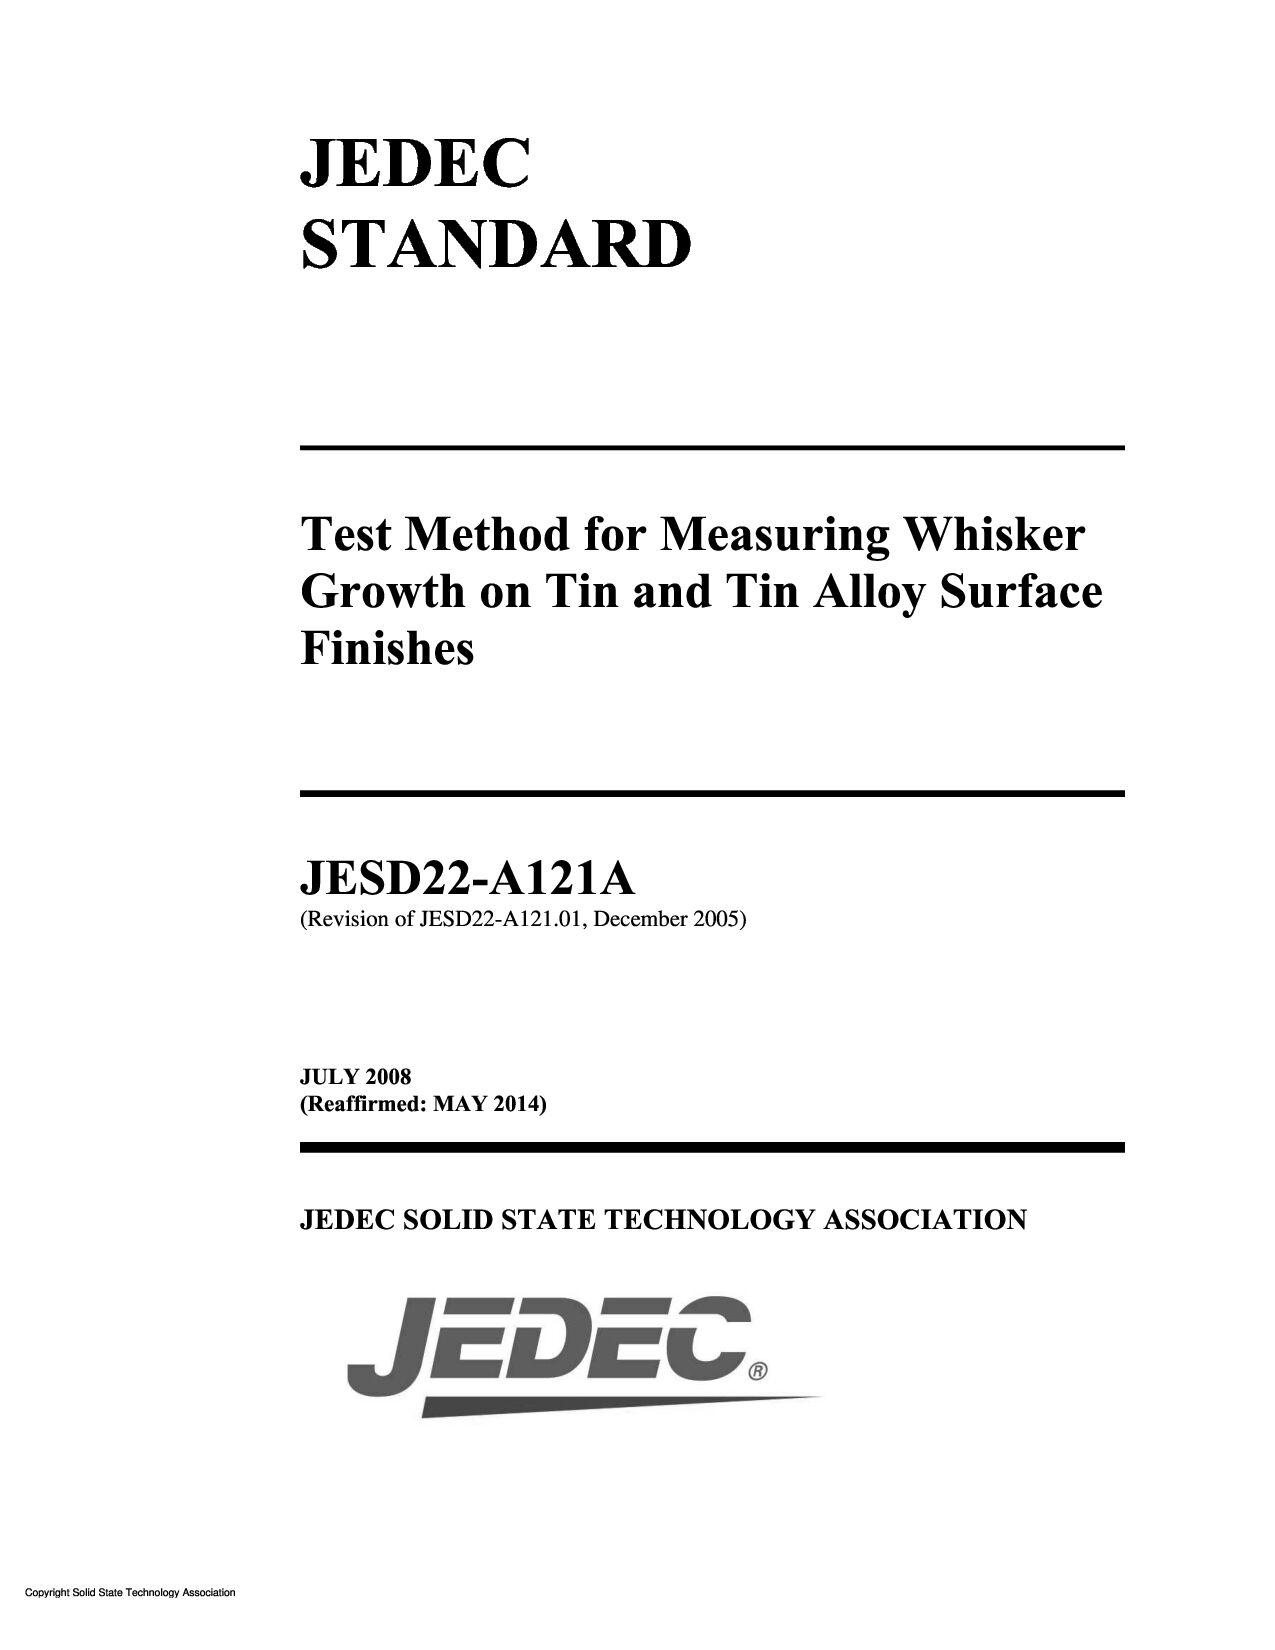 JEDEC JESD22-A121A-2008(2014)